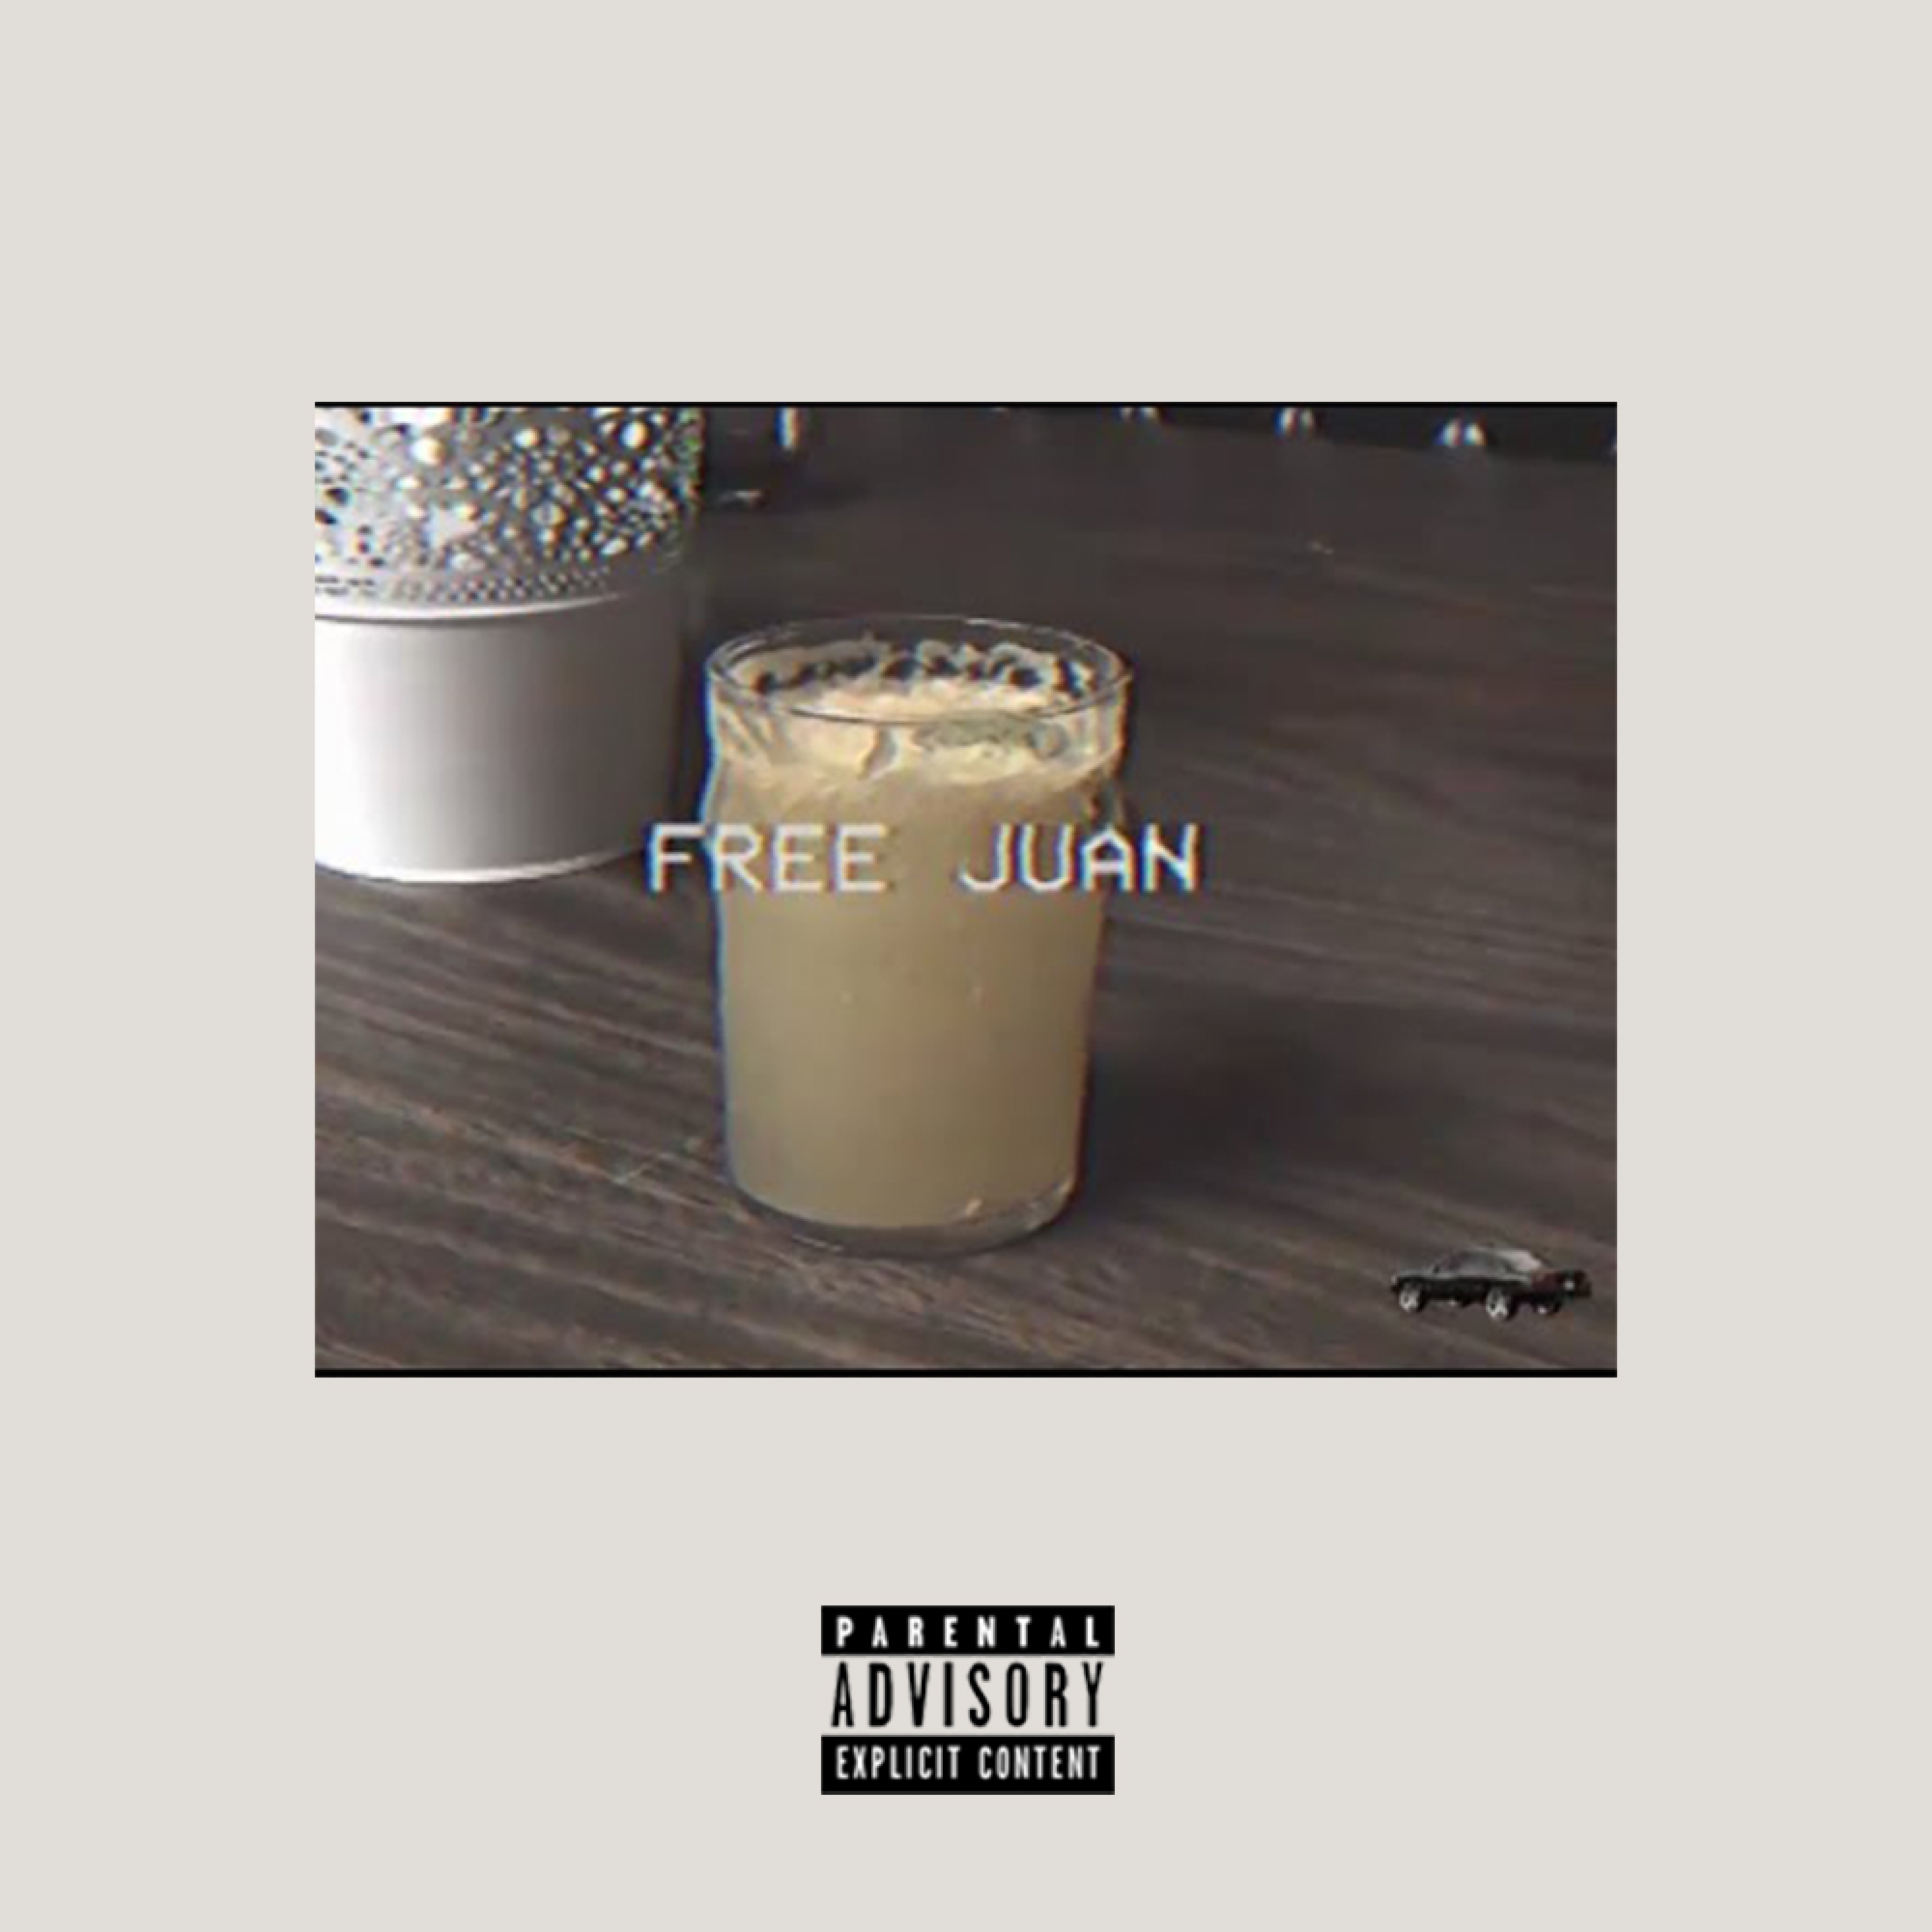 Free Juan